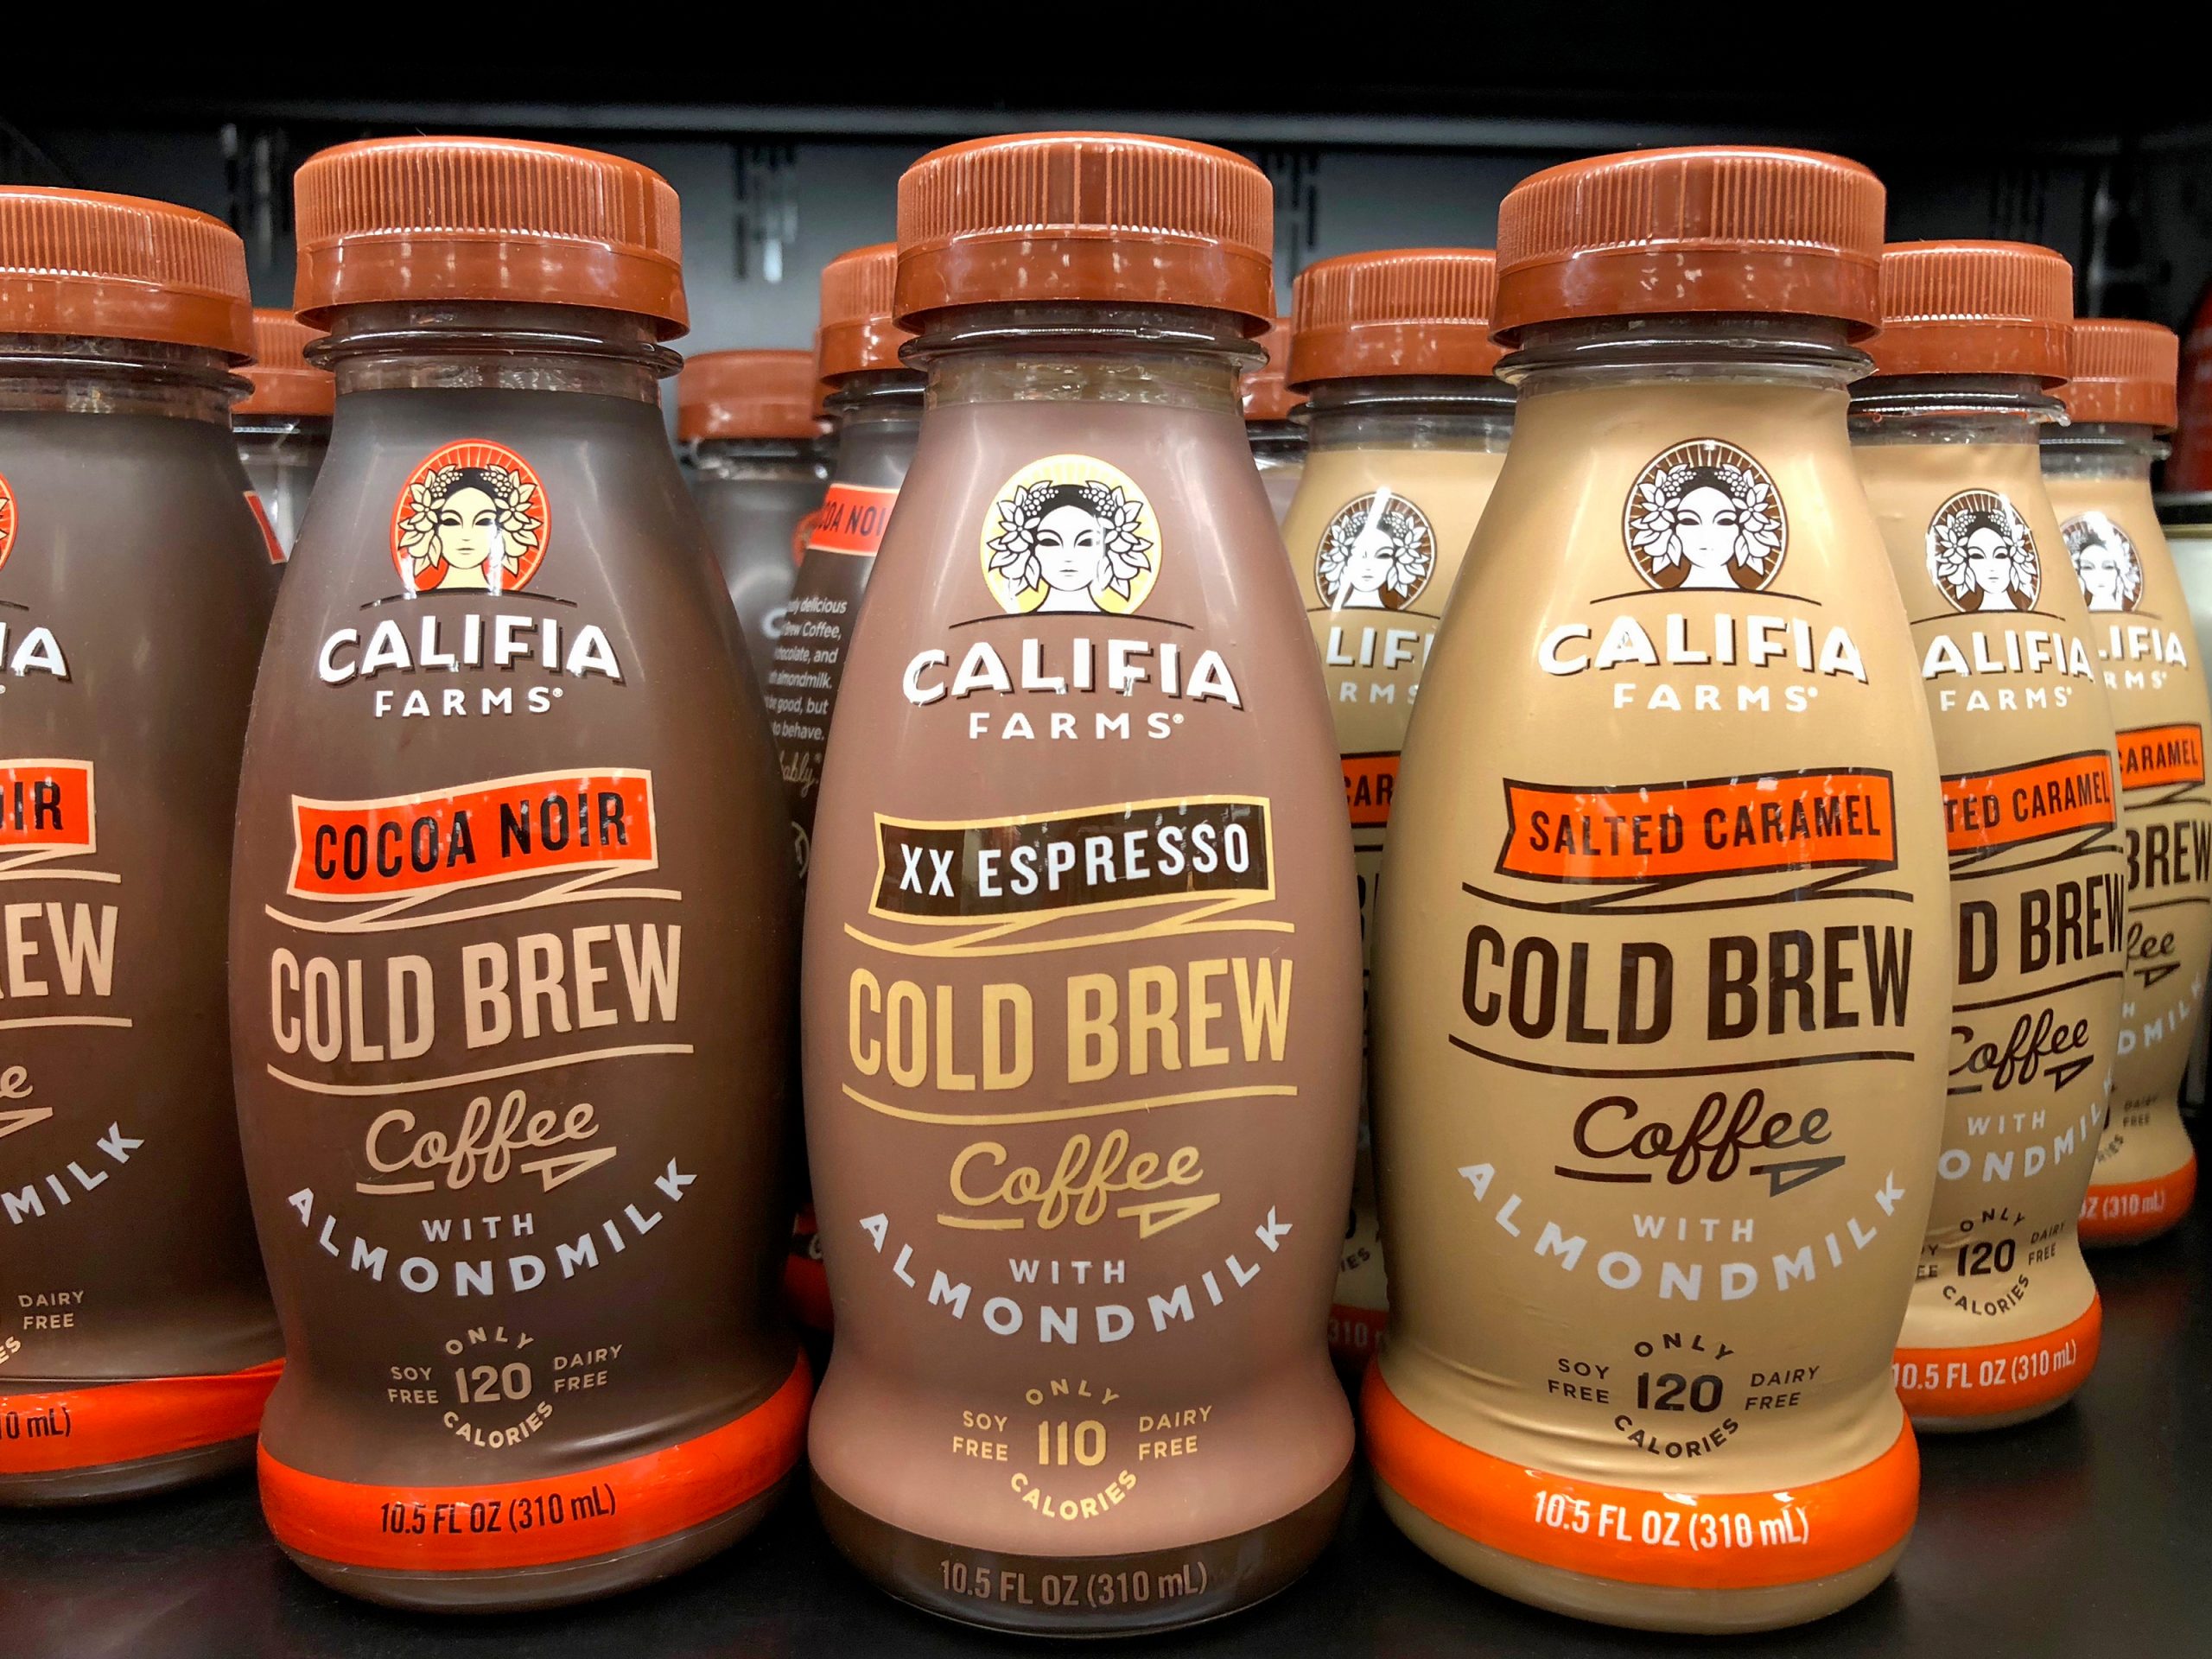 Califia Farms Cold Brew